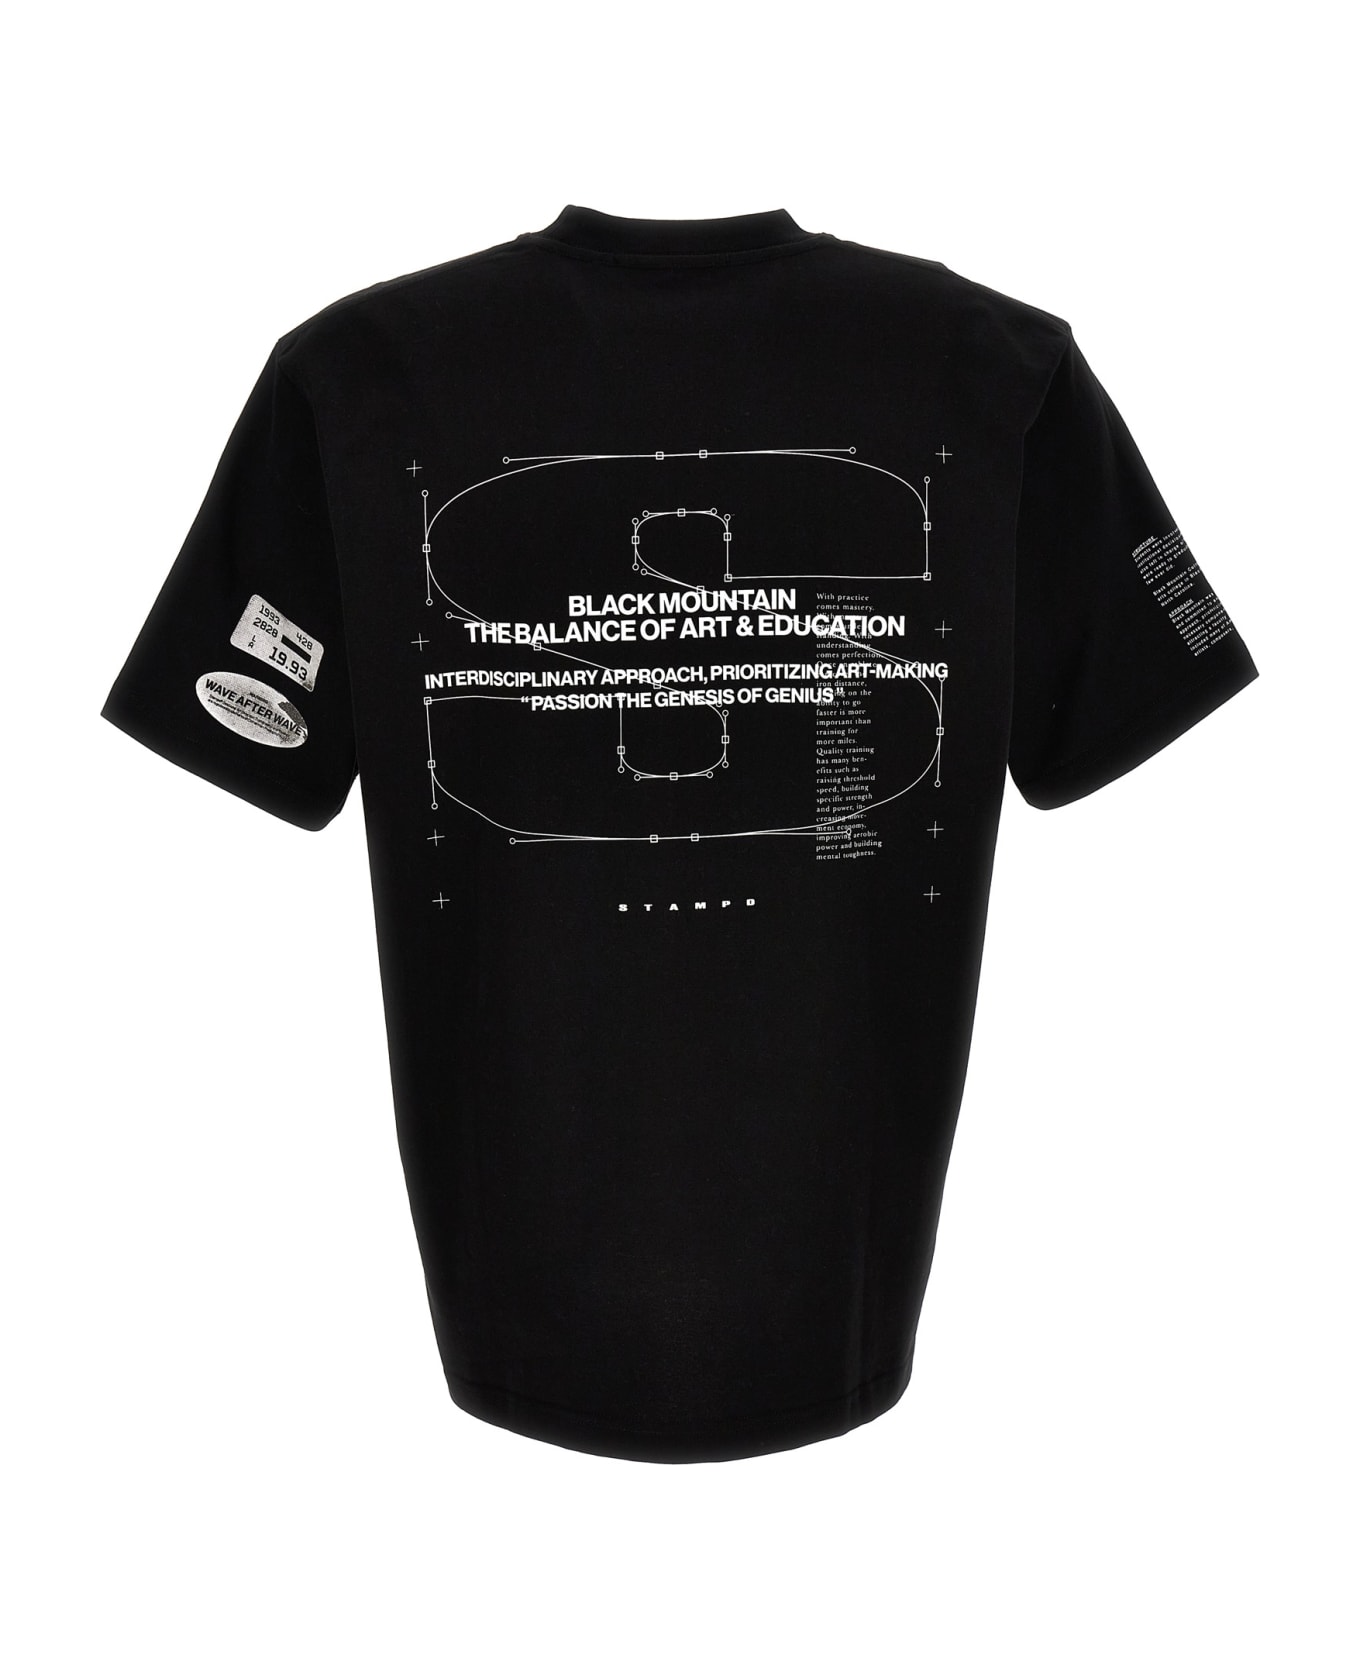 Stampd 'mountain Transit' T-shirt - White/Black